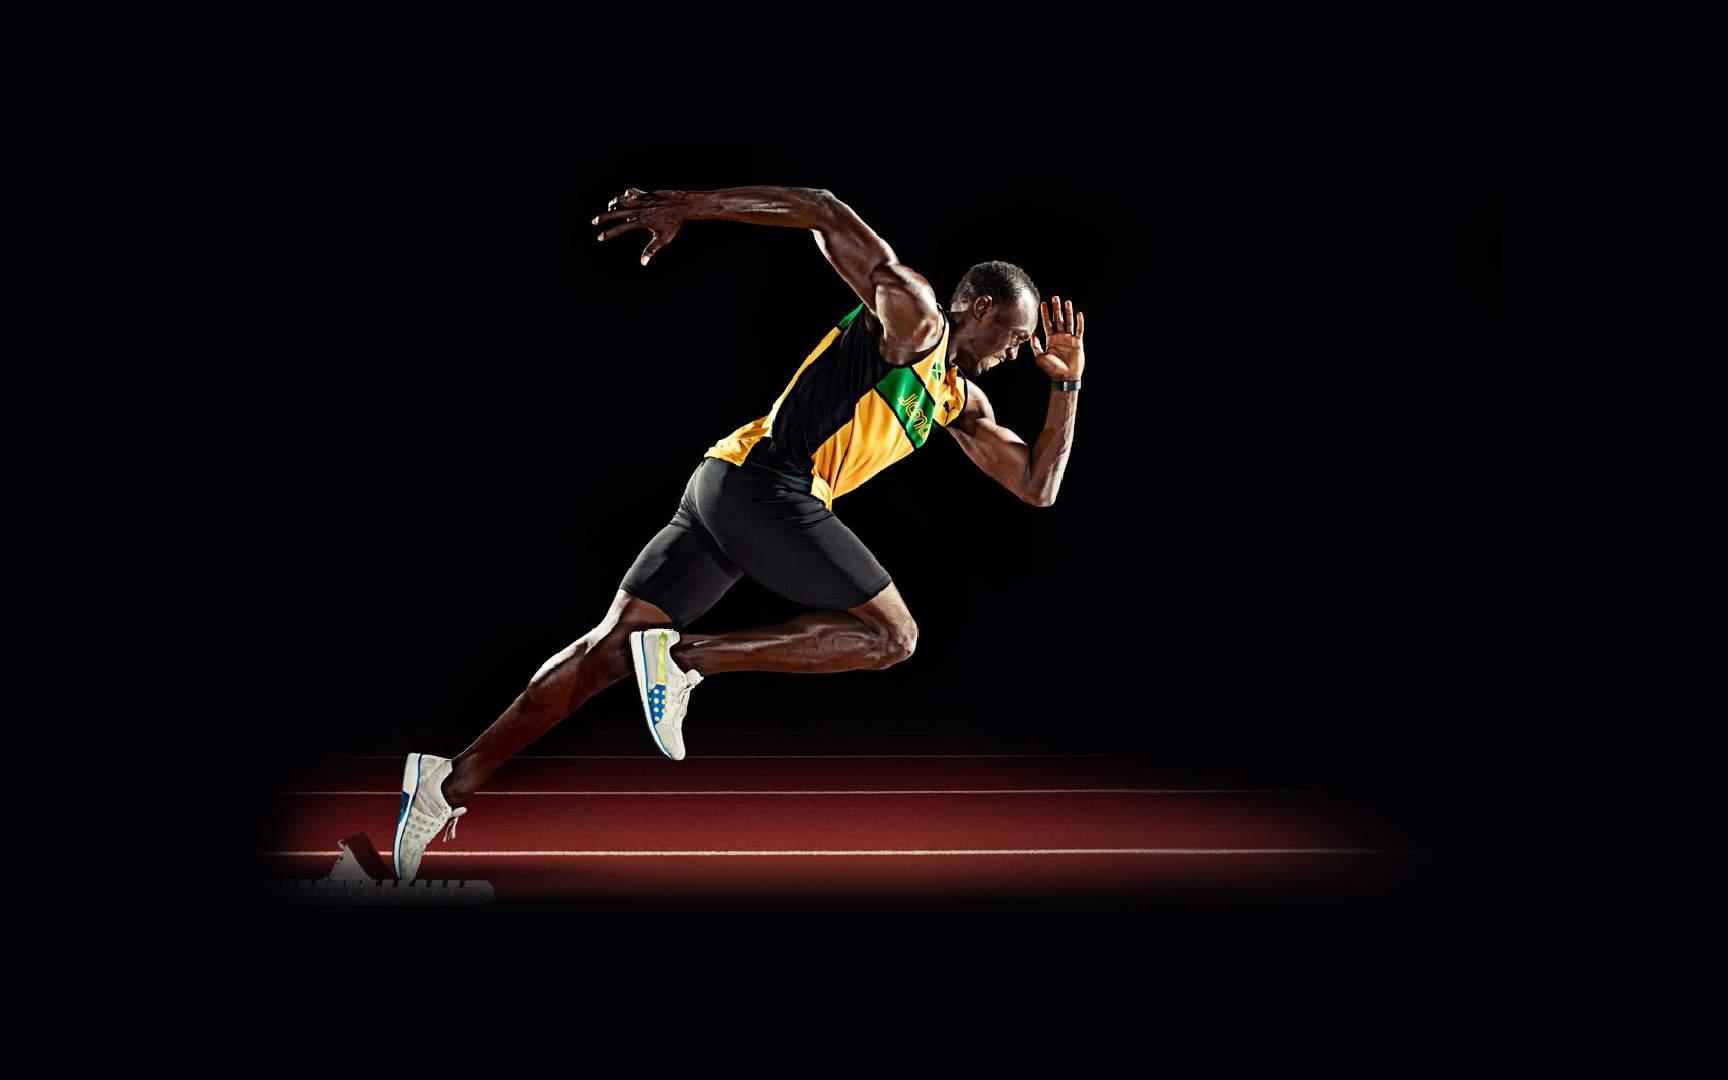 Usain Bolt Wallpaper Widescreen Iu9k411 4usky